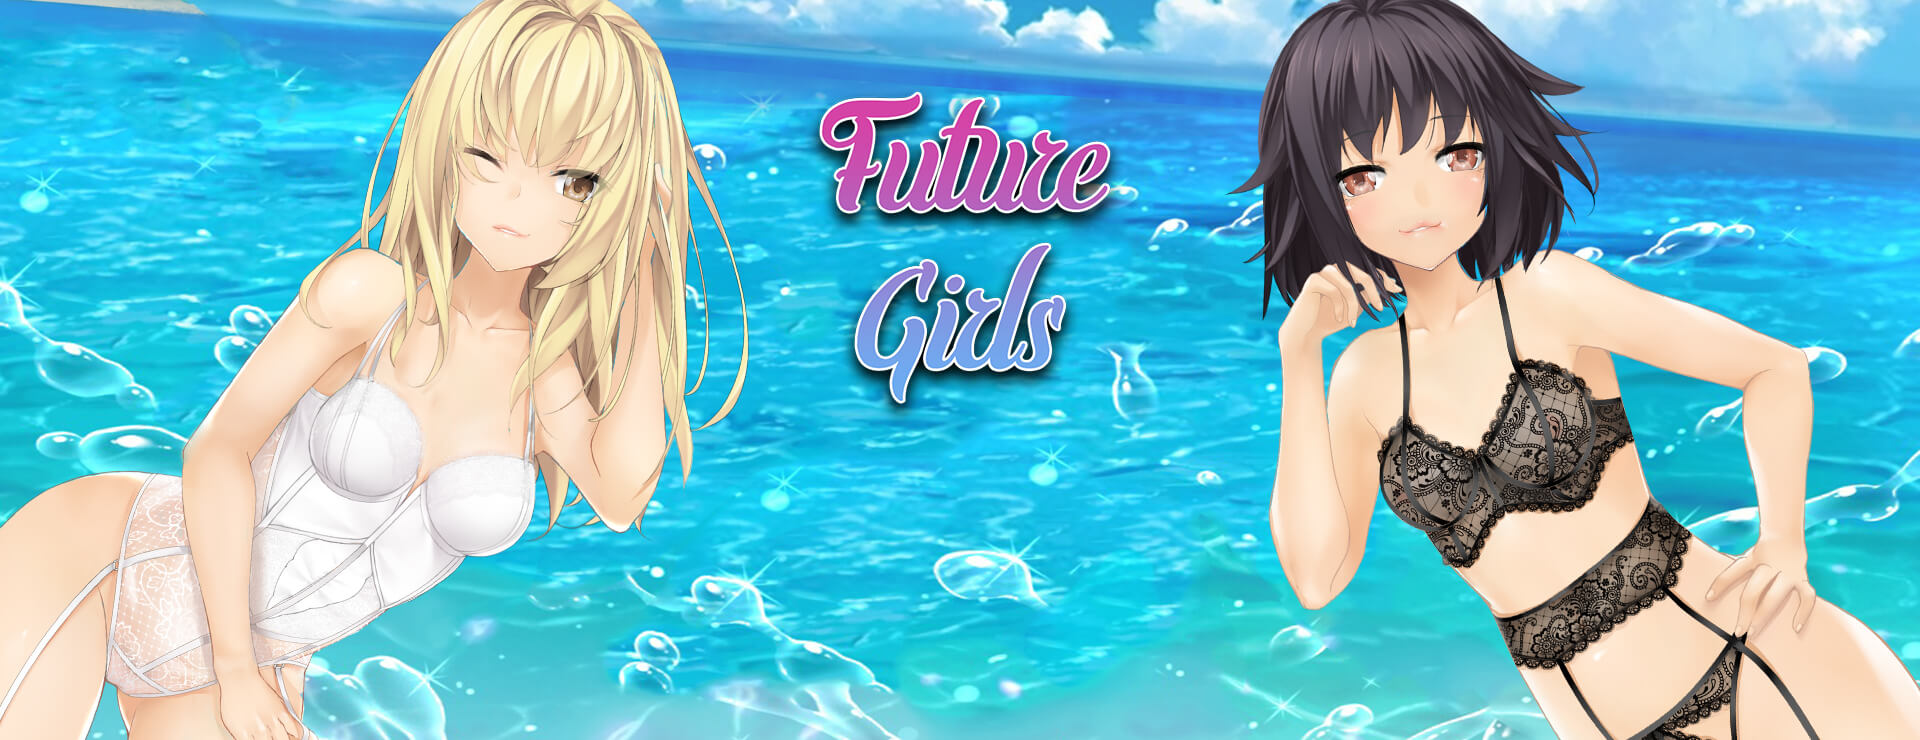 Future Girls - 虚拟小说 遊戲